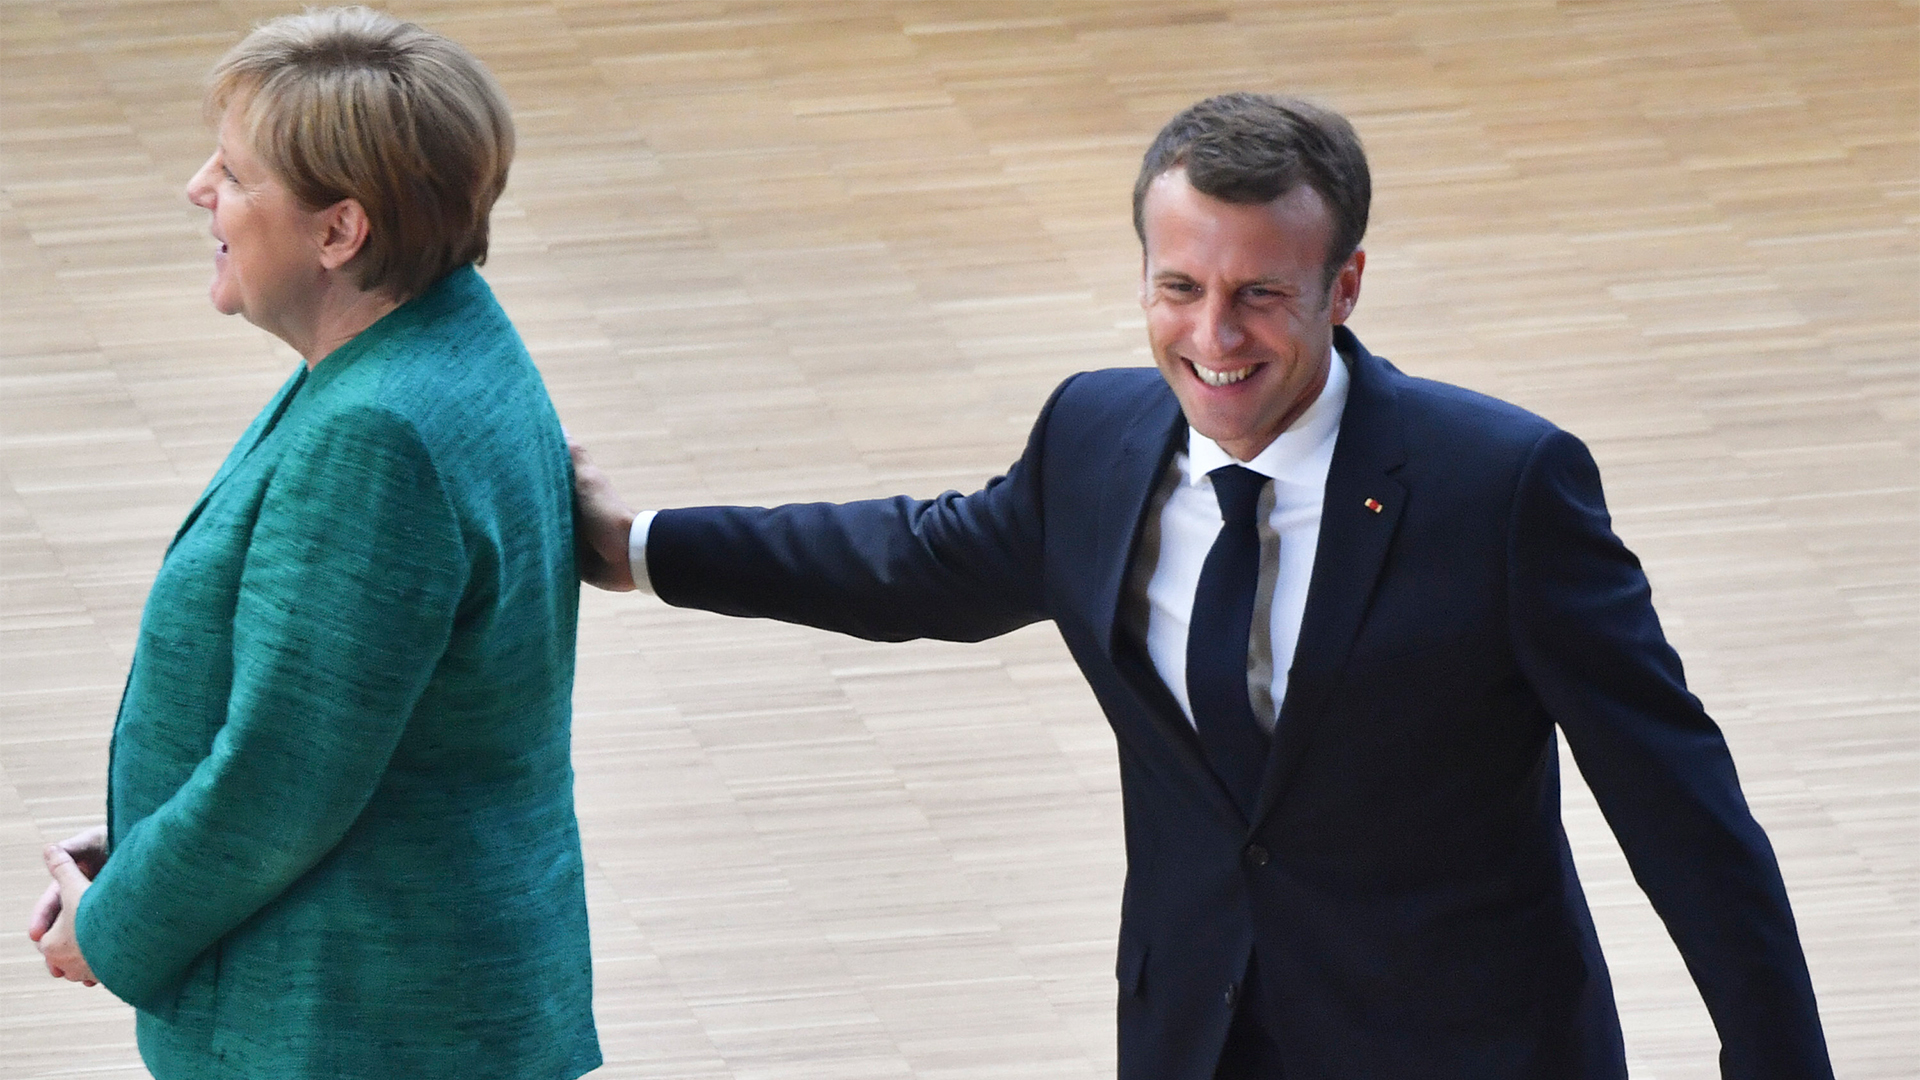 Emmanuel Macron legt Angela Merkel die Hand auf die Schulter